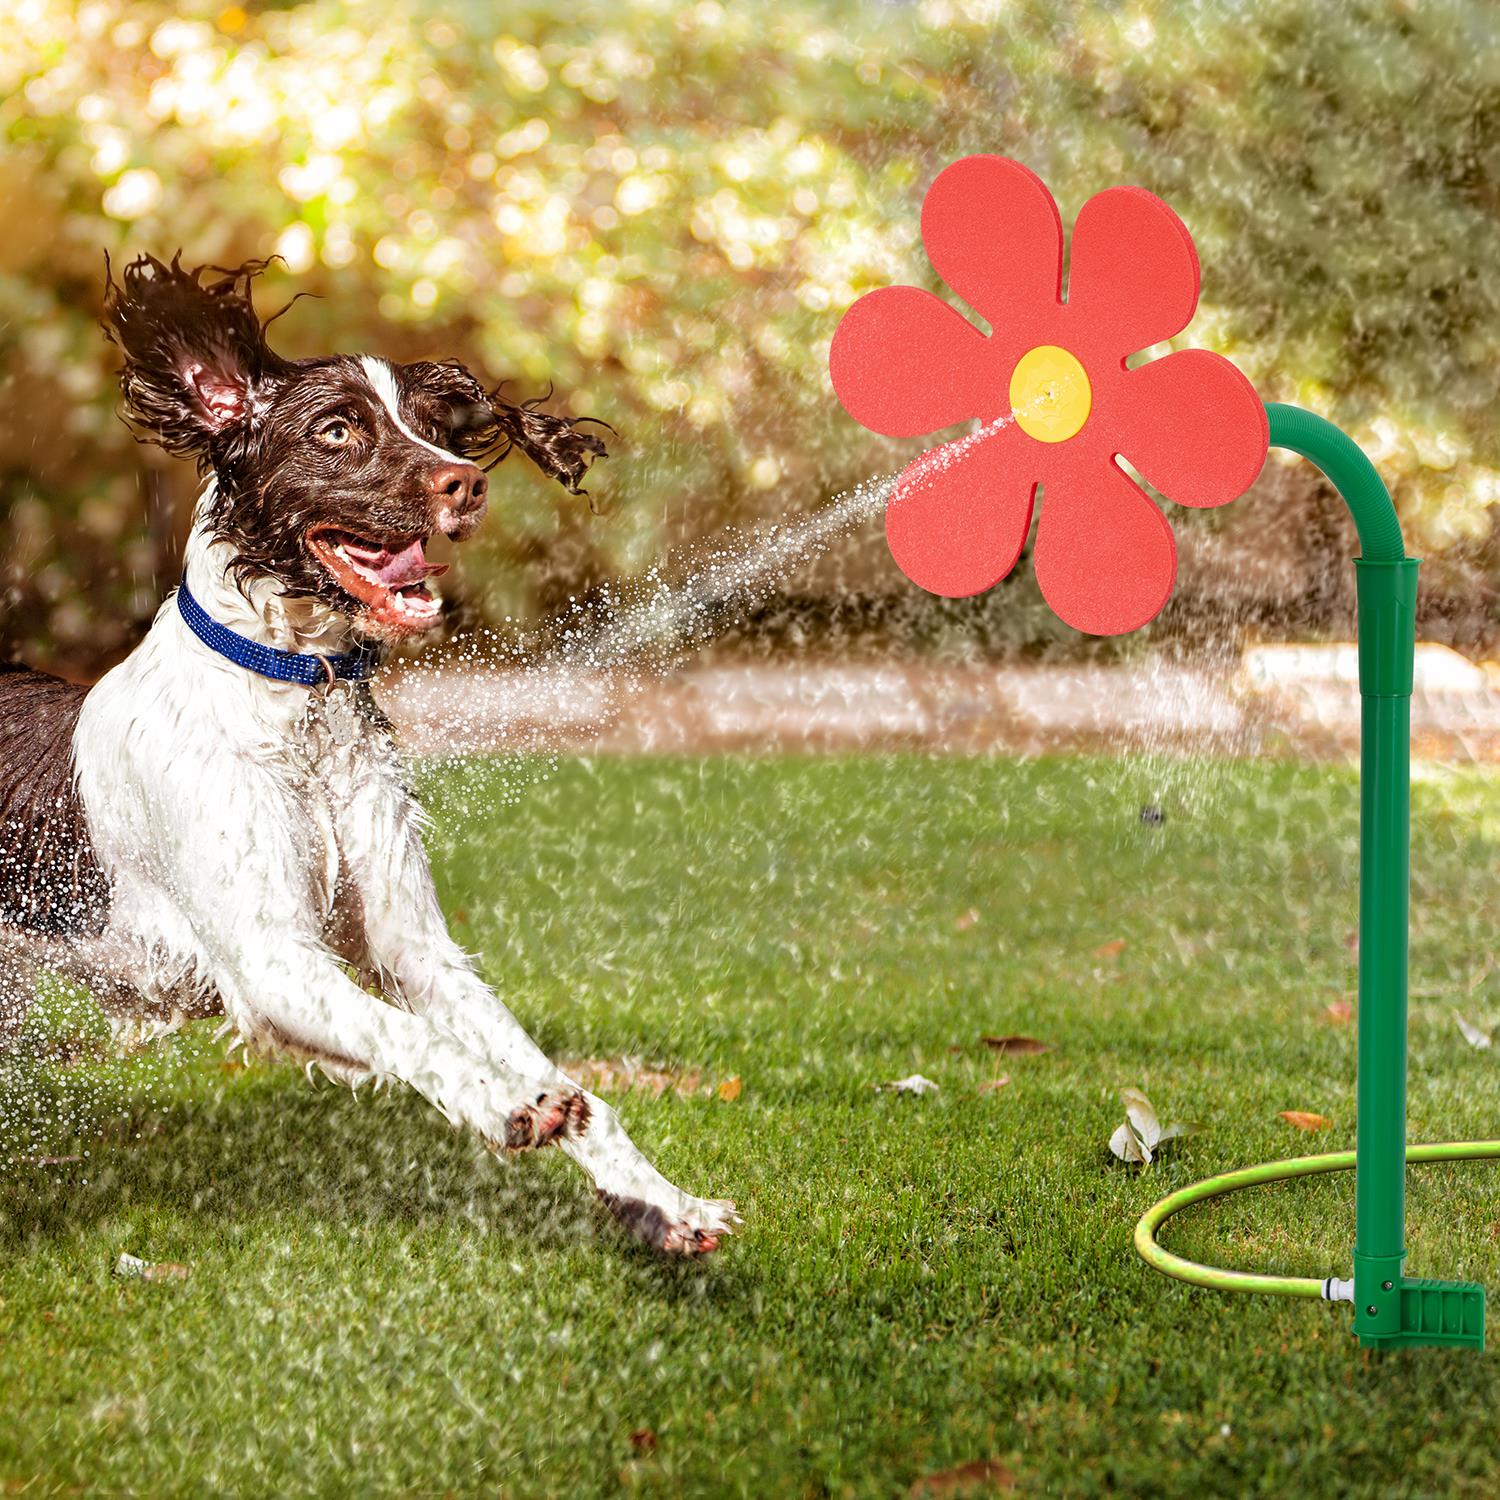 Flower Pet Water Sprinkler